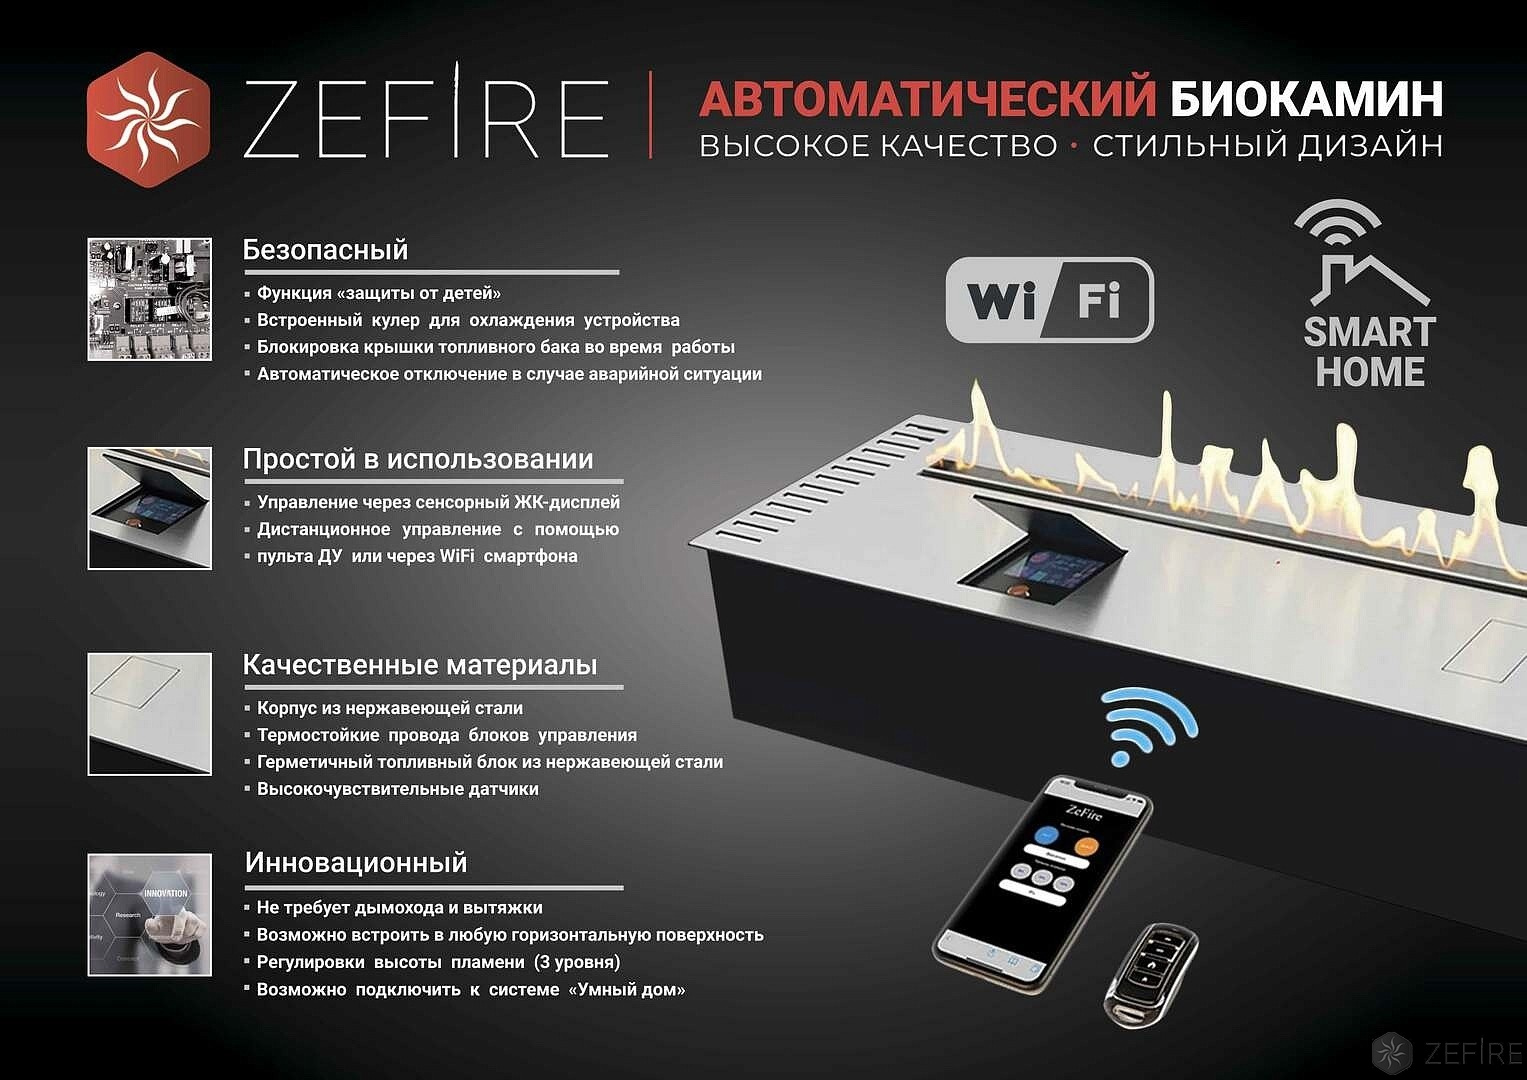 Автоматический биокамин ZeFire Automatic 1000 с ДУ